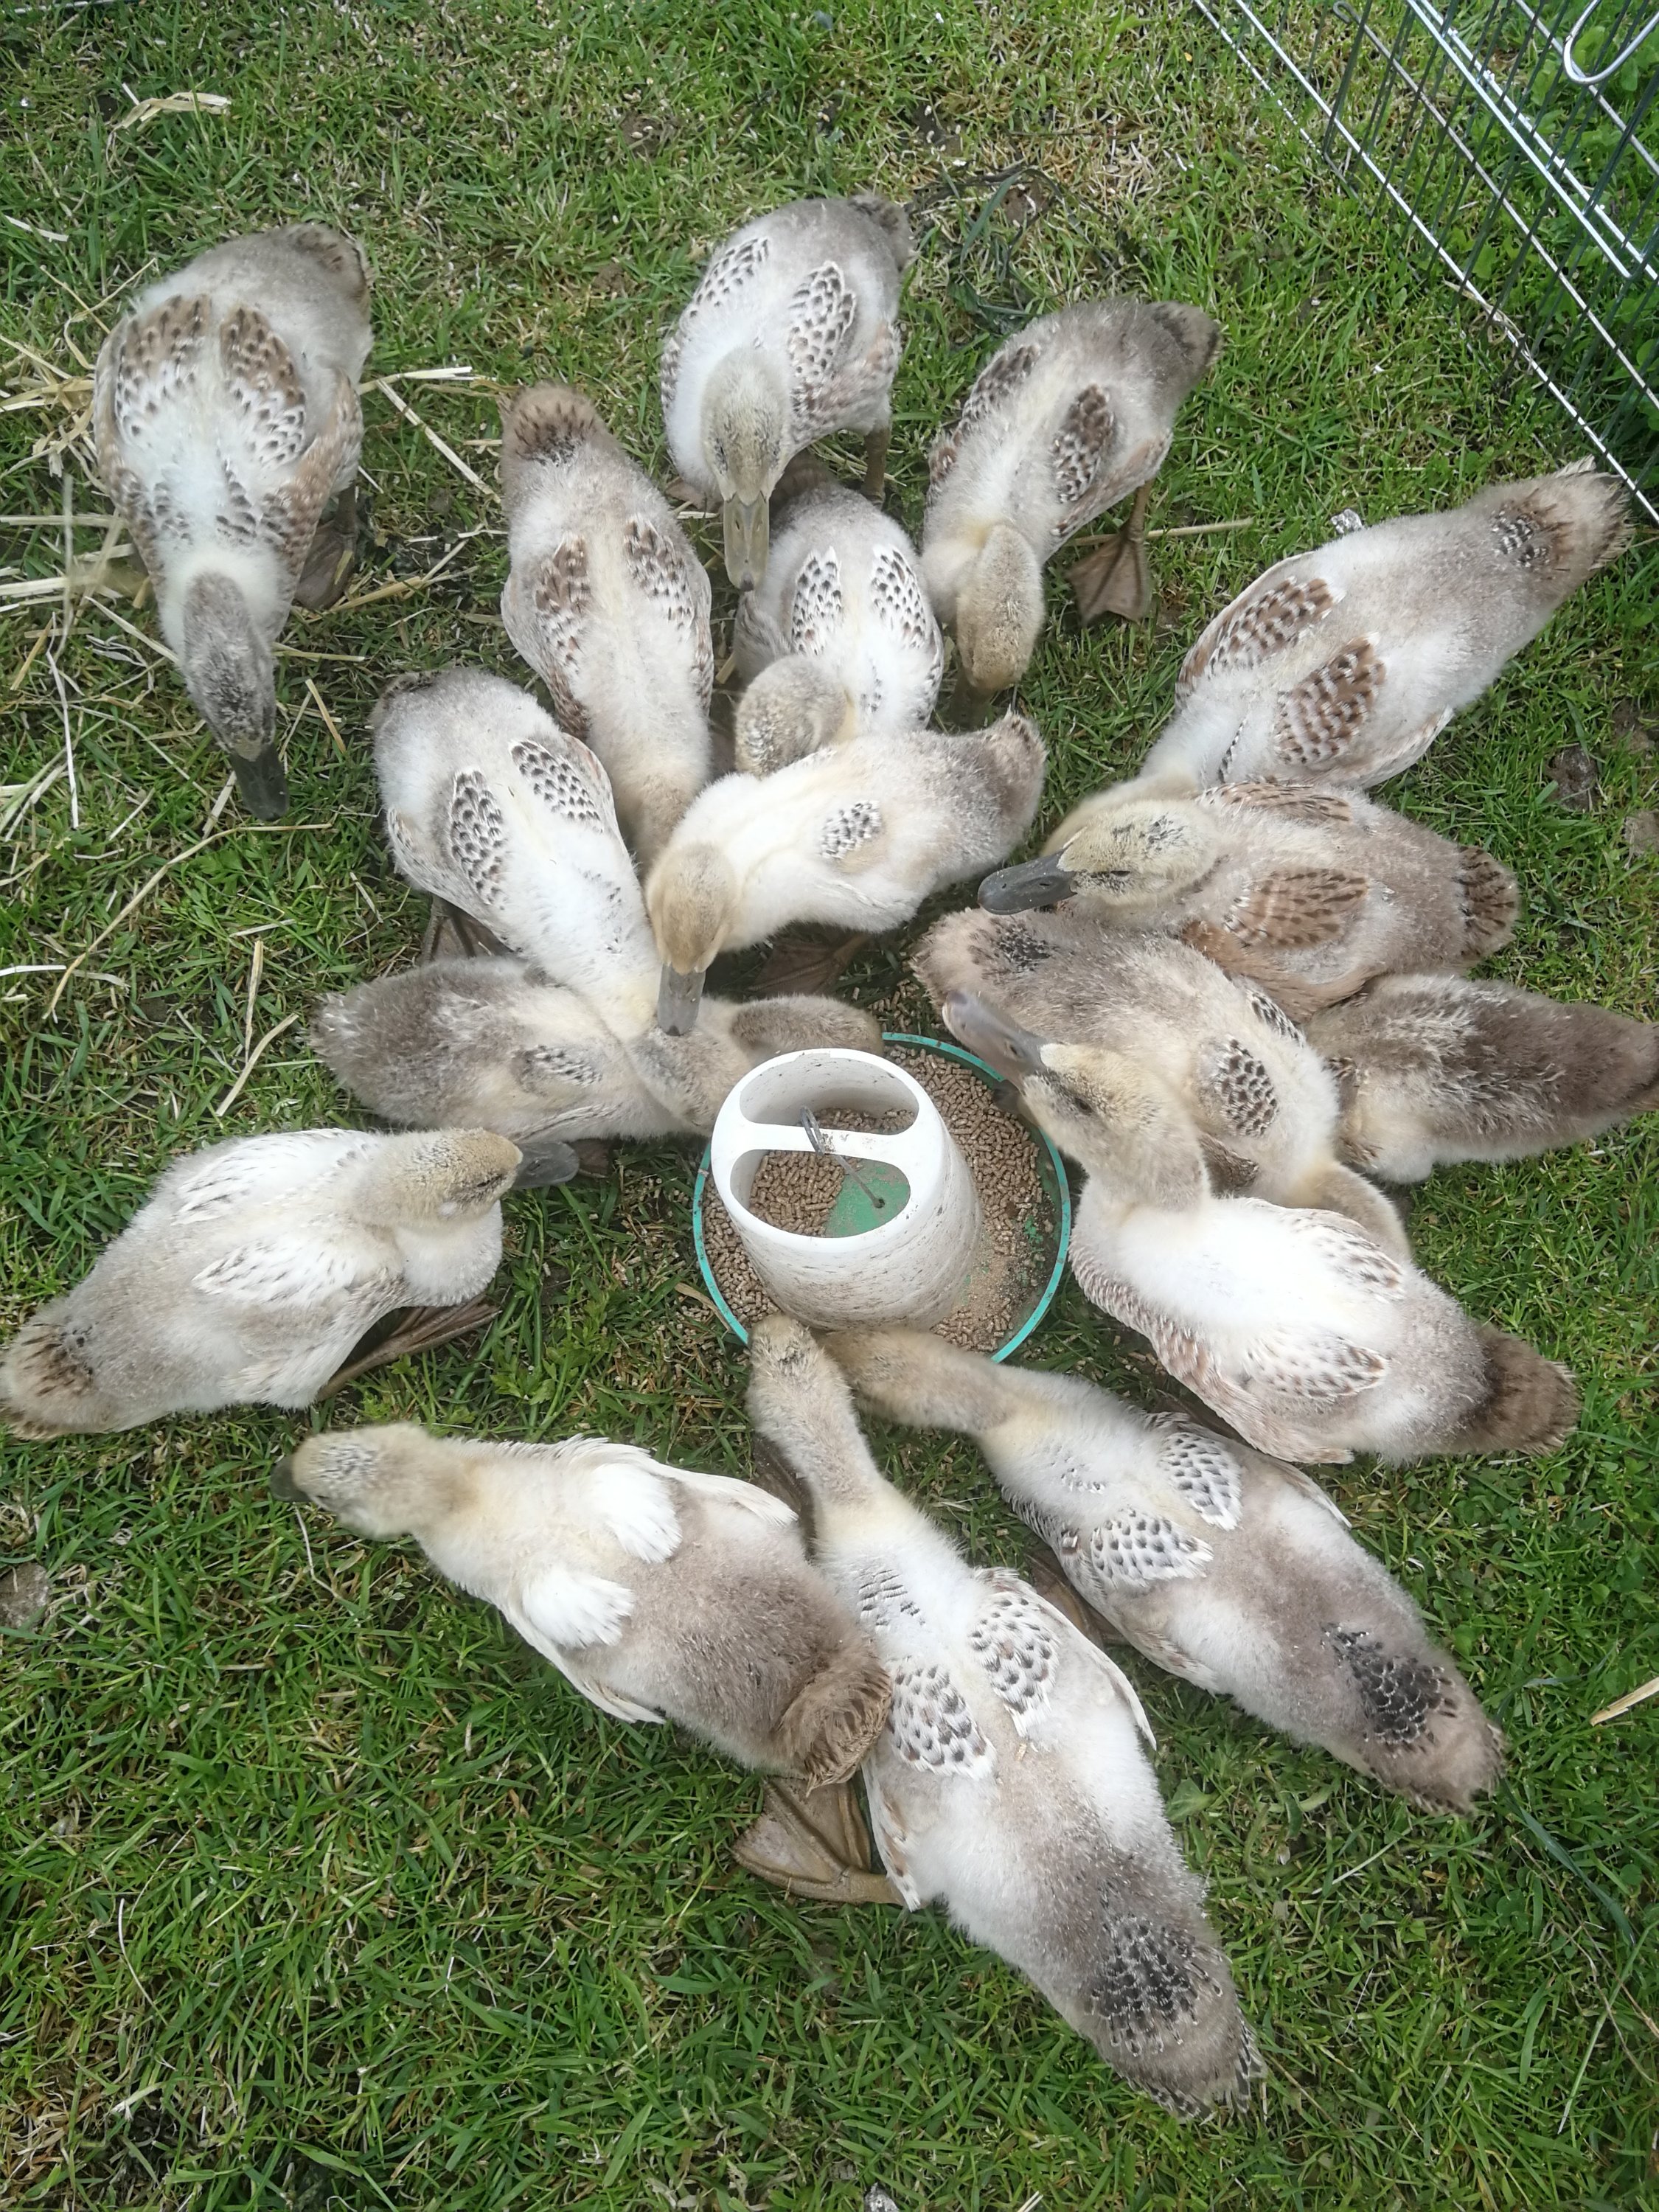 5 week old Welsh Harlequin Ducks gathered around their feeder